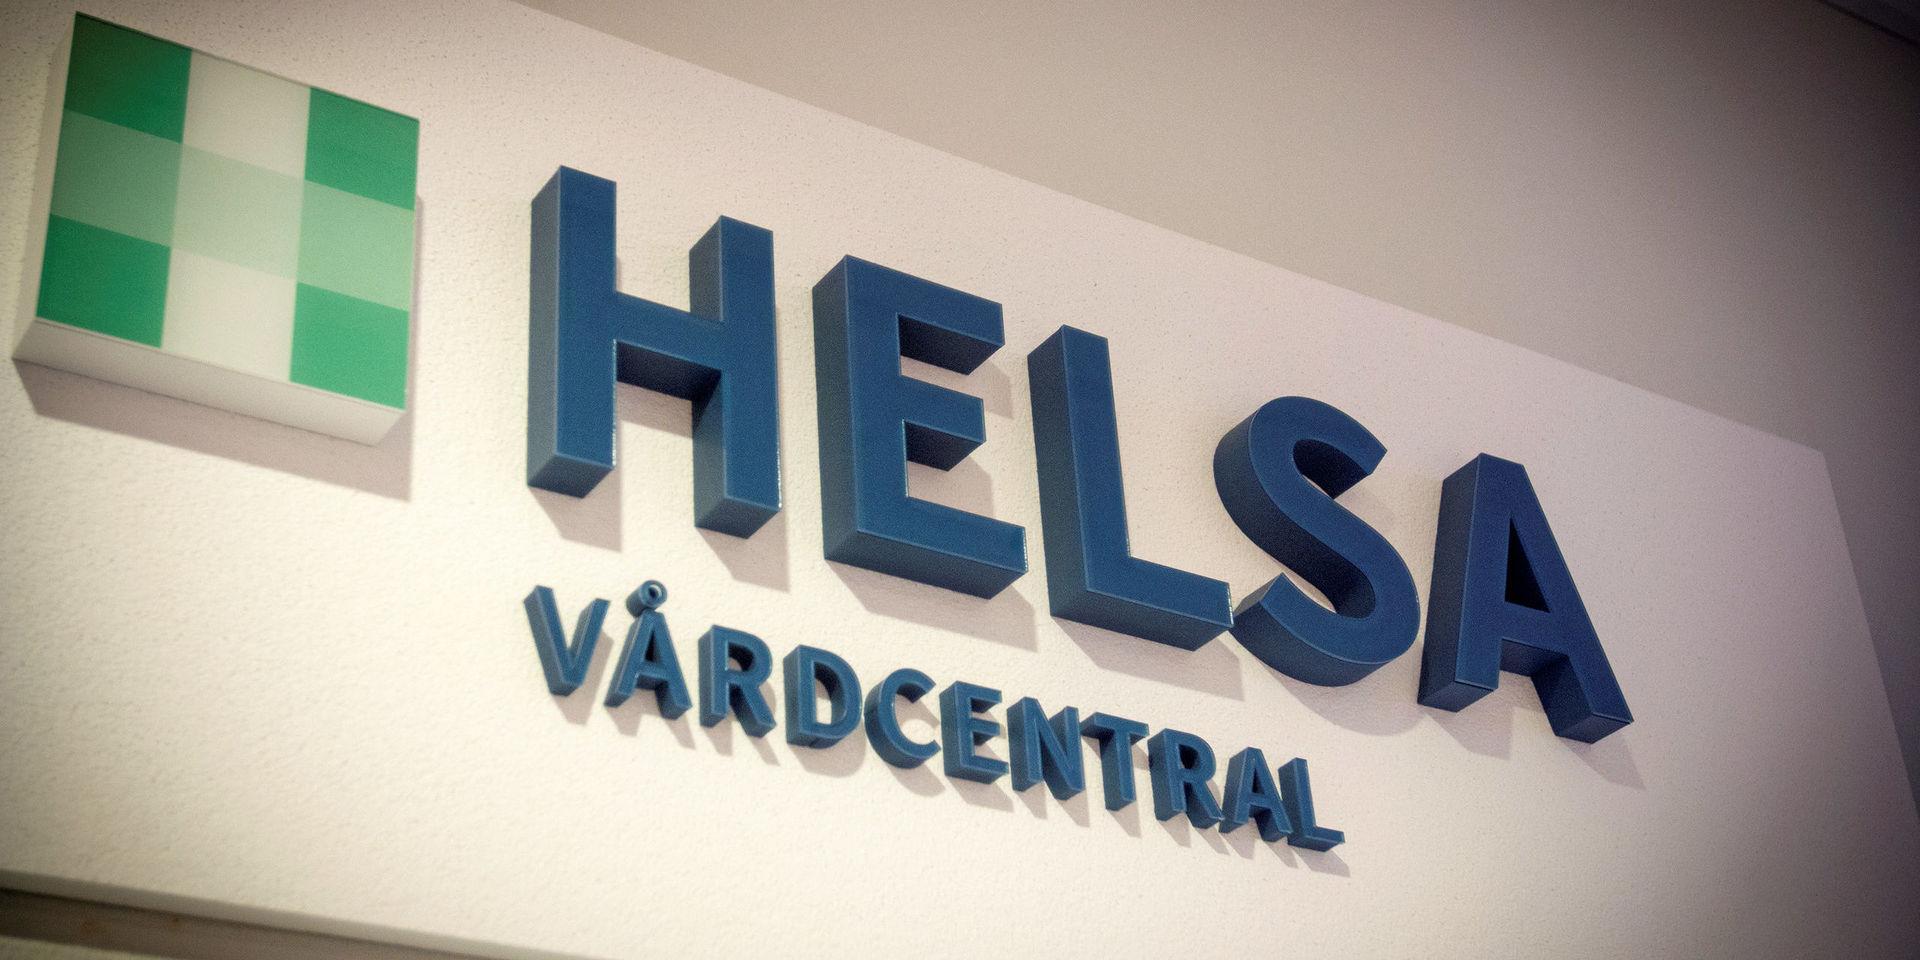 Vårdföretaget Helsa köps av nätläkarbolaget Kry. Vårdcentralen i Glänninge ska finnas kvar som tidigare. All personal följer med när Kry tar över driften från och med mitten av augusti.